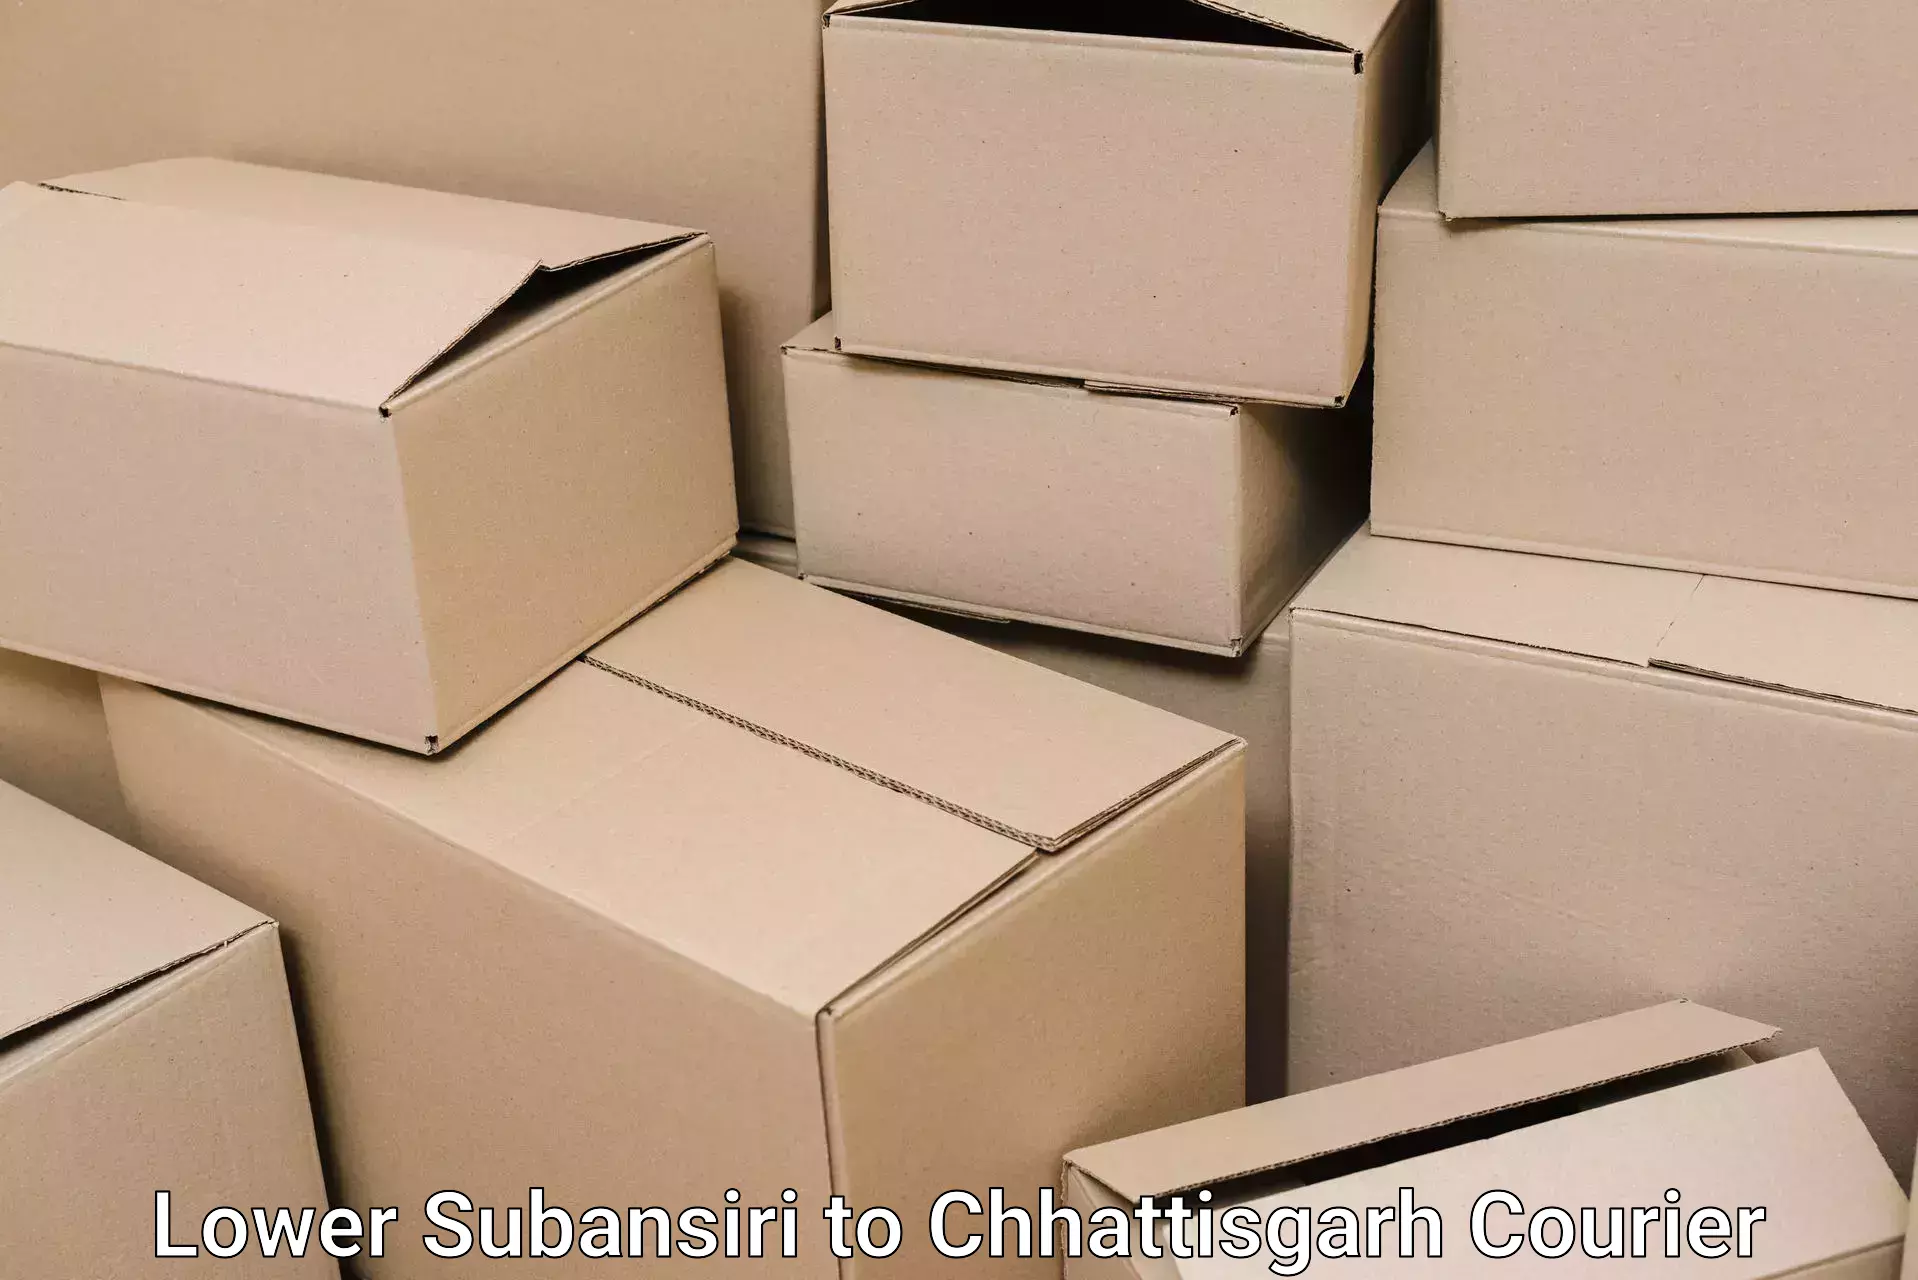 Household moving experts Lower Subansiri to Raigarh Chhattisgarh